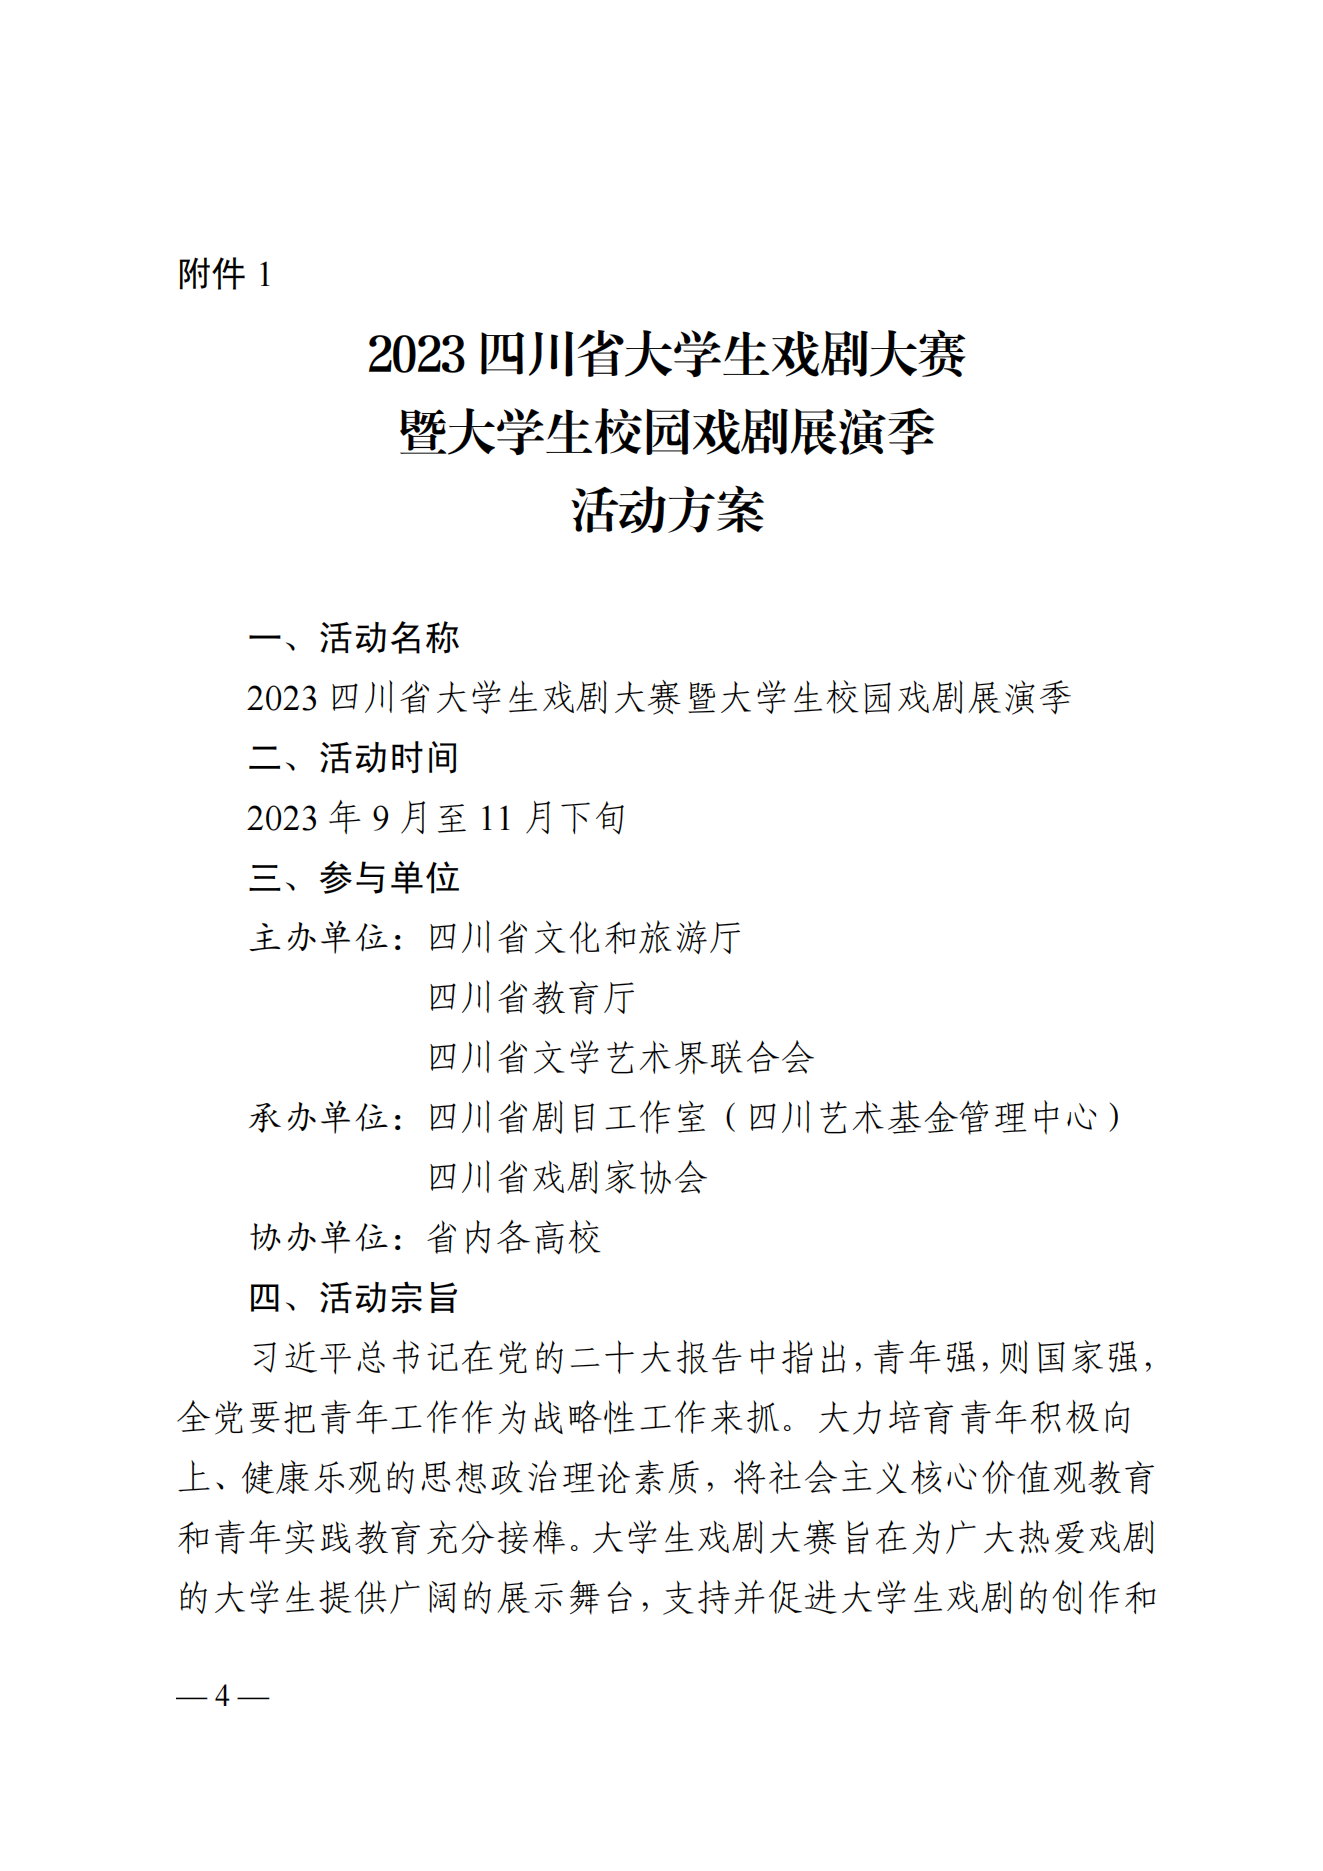 关于举办2023四川省大学生戏剧大赛暨大学生校园戏剧展演季的通知_03.png